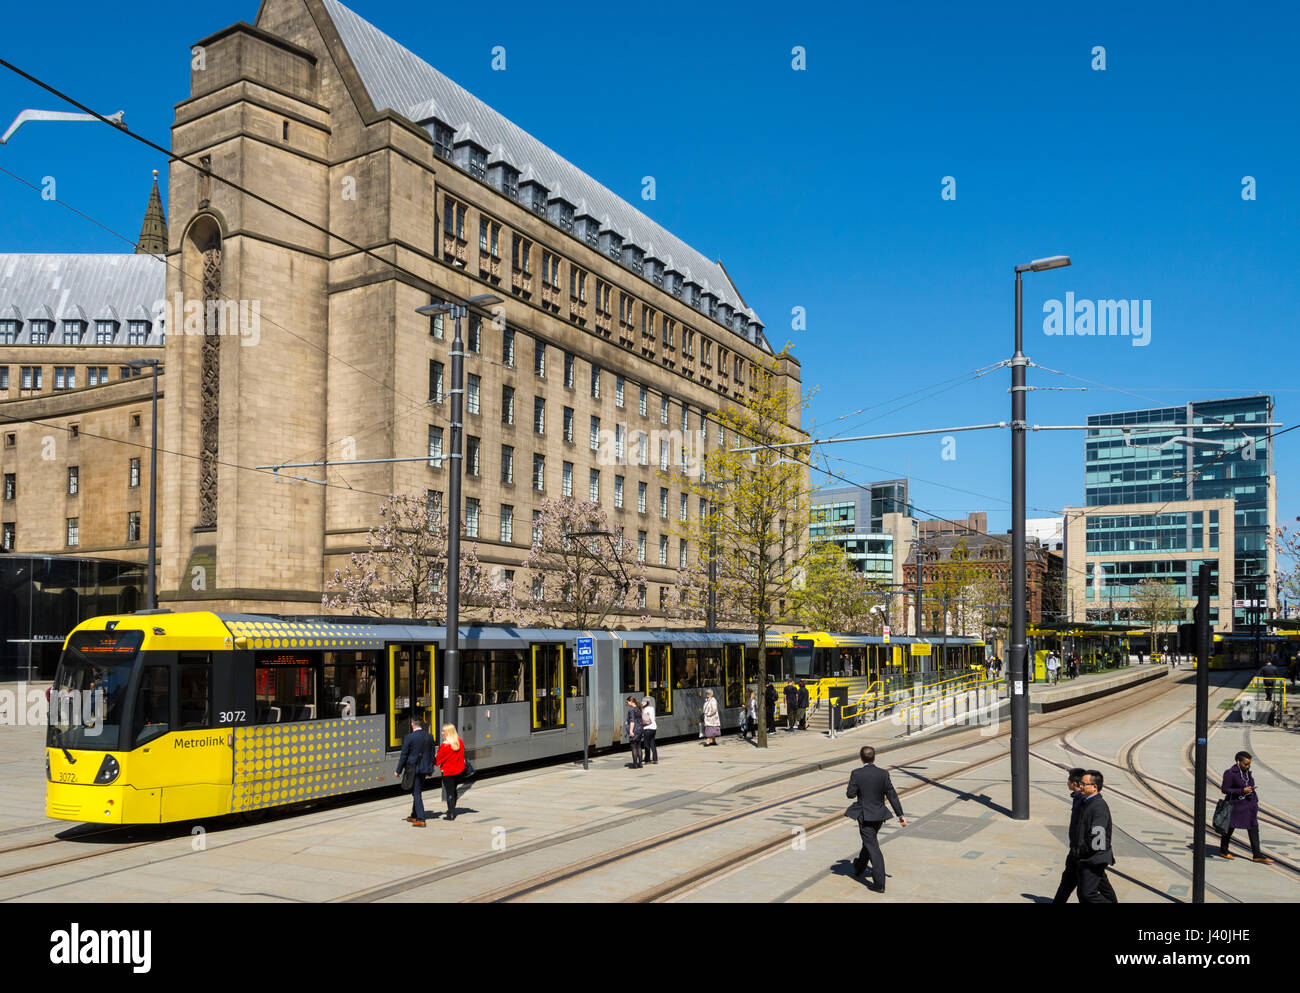 Il municipio edificio di estensione e il Metrolink fermata del tram, Piazza San Pietro, Manchester, Inghilterra, Regno Unito Foto Stock